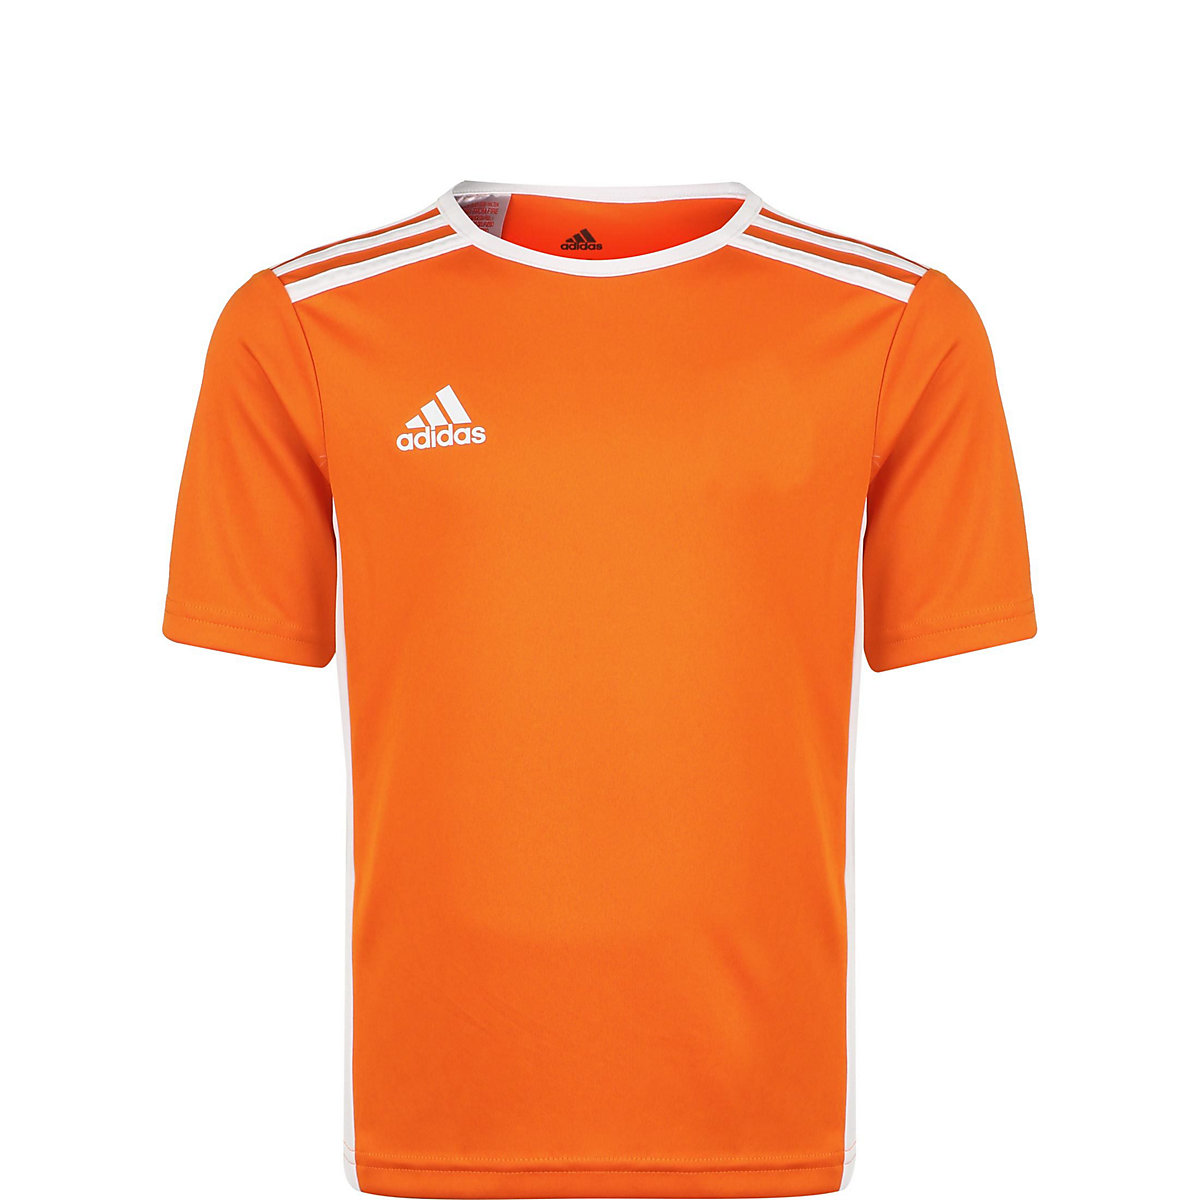 adidas Trikot ENTRADA 18 JSYY für Jungen (recycelt) orange/weiß